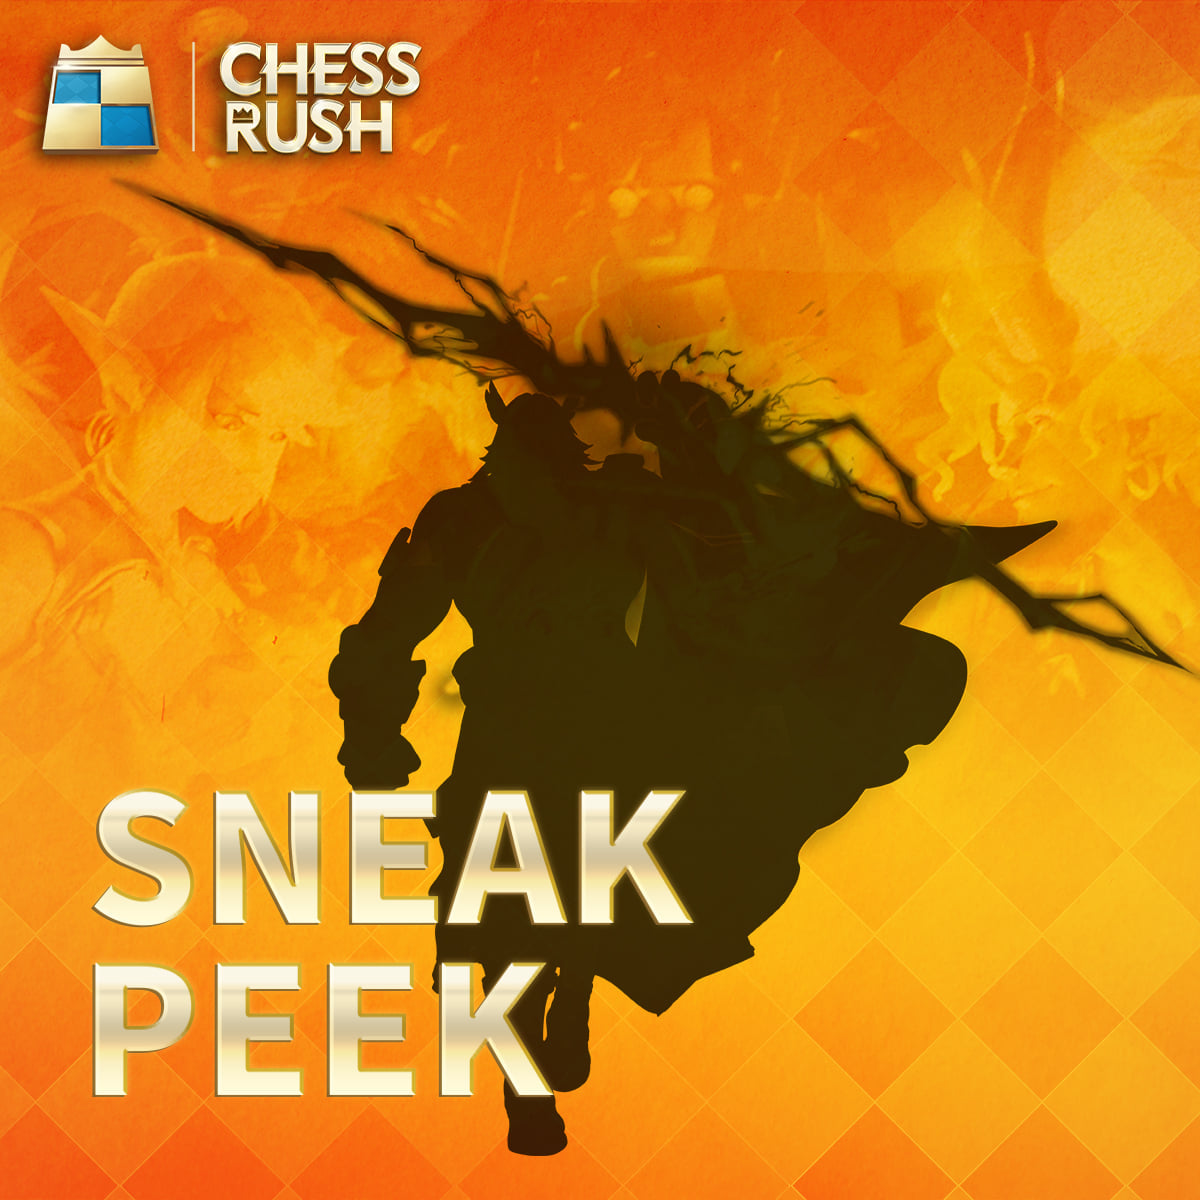 4 Kejutan ini bakal hadir di Chess Rush jelang season 8 nanti